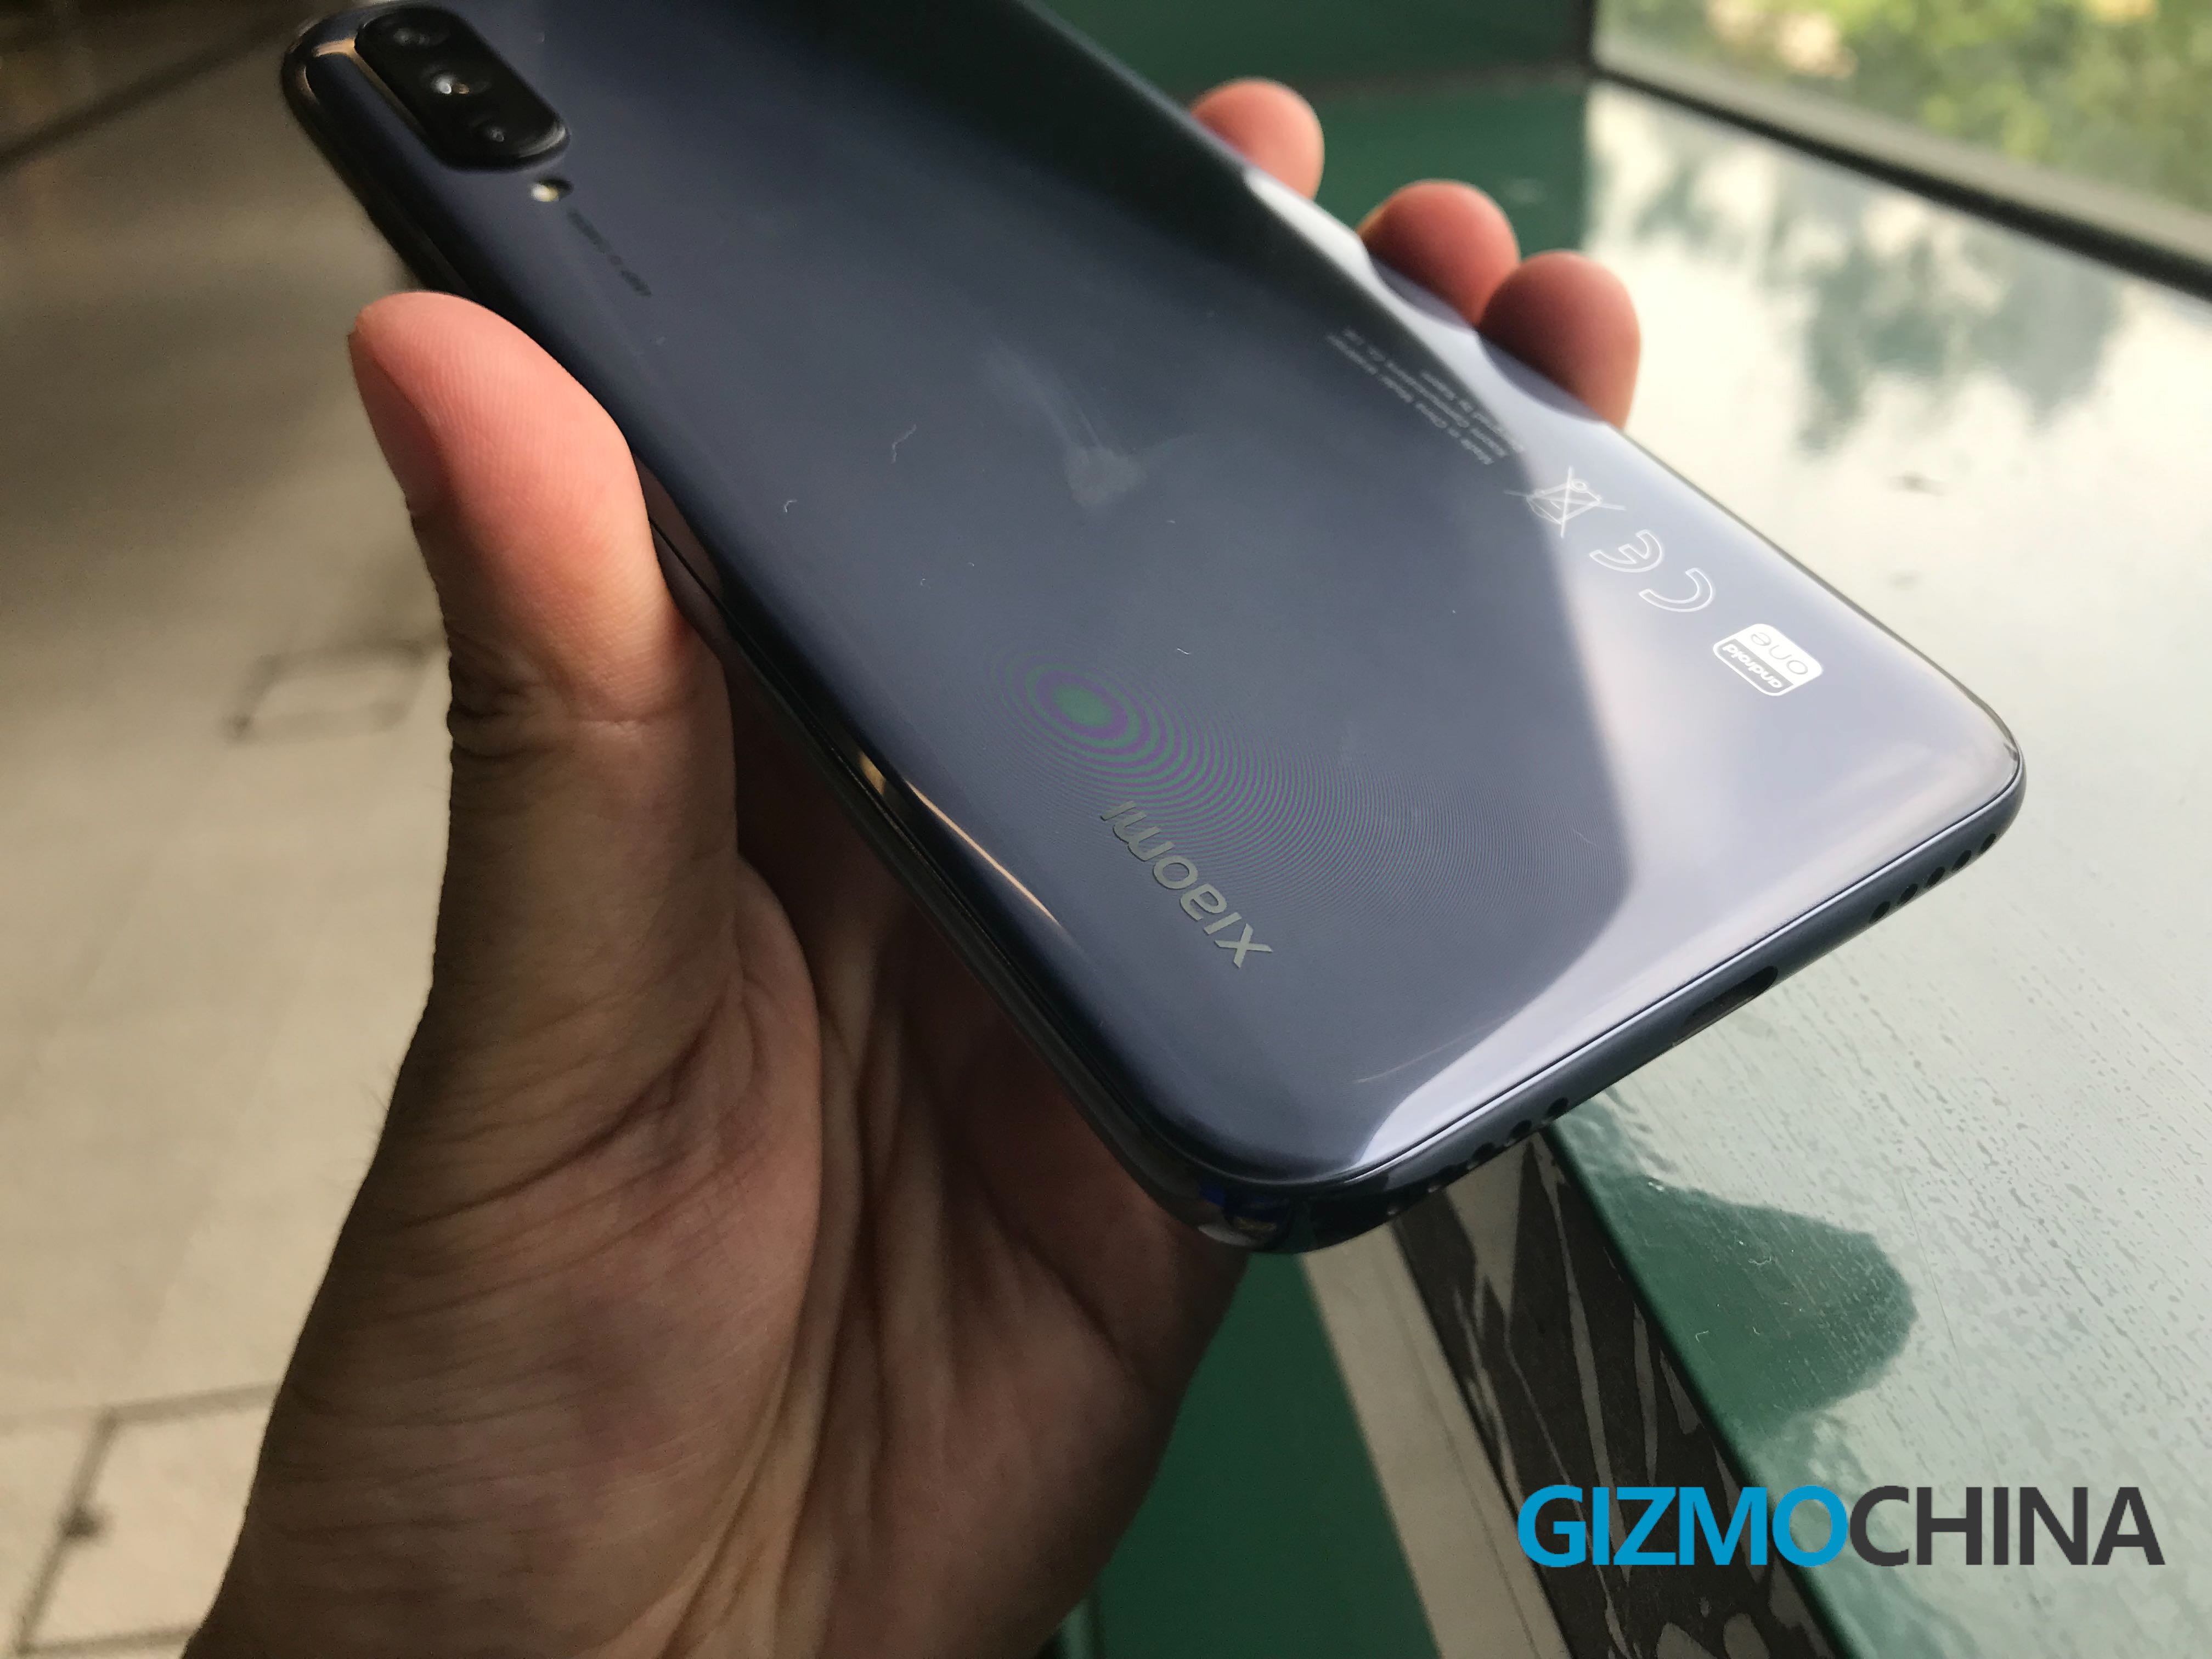 Premiera Xiaomi Mi A3 cena opinie specyfikacja techniczna gdzie kupić najtaniej w Polsce plotki przecieki Android One